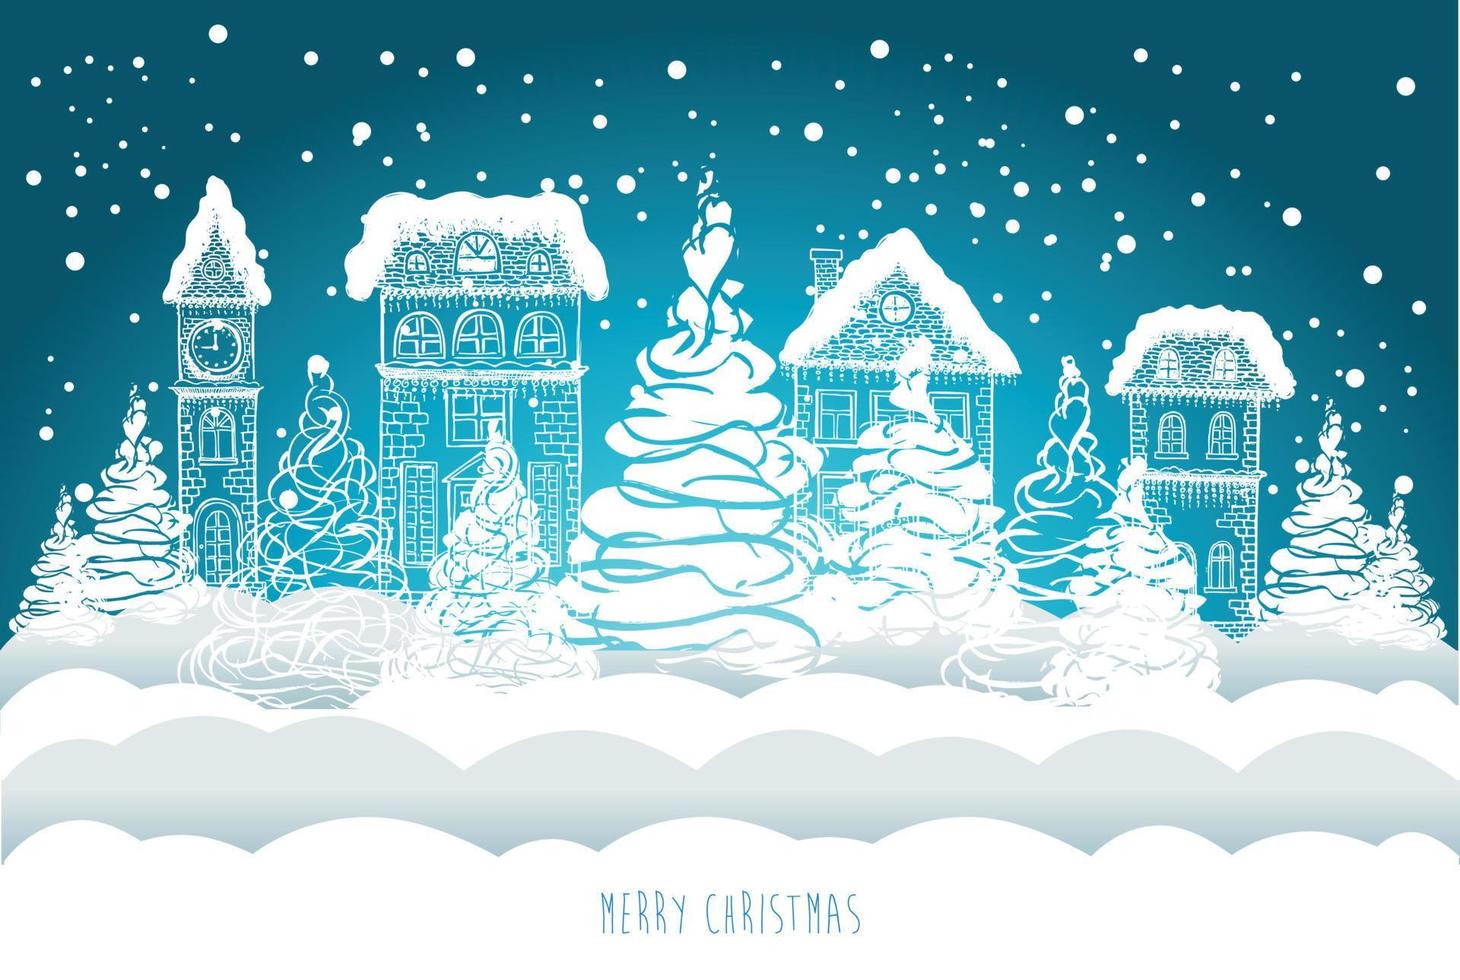 ilustración de casas. tarjeta de felicitación de navidad. ilustración dibujada a mano. vector